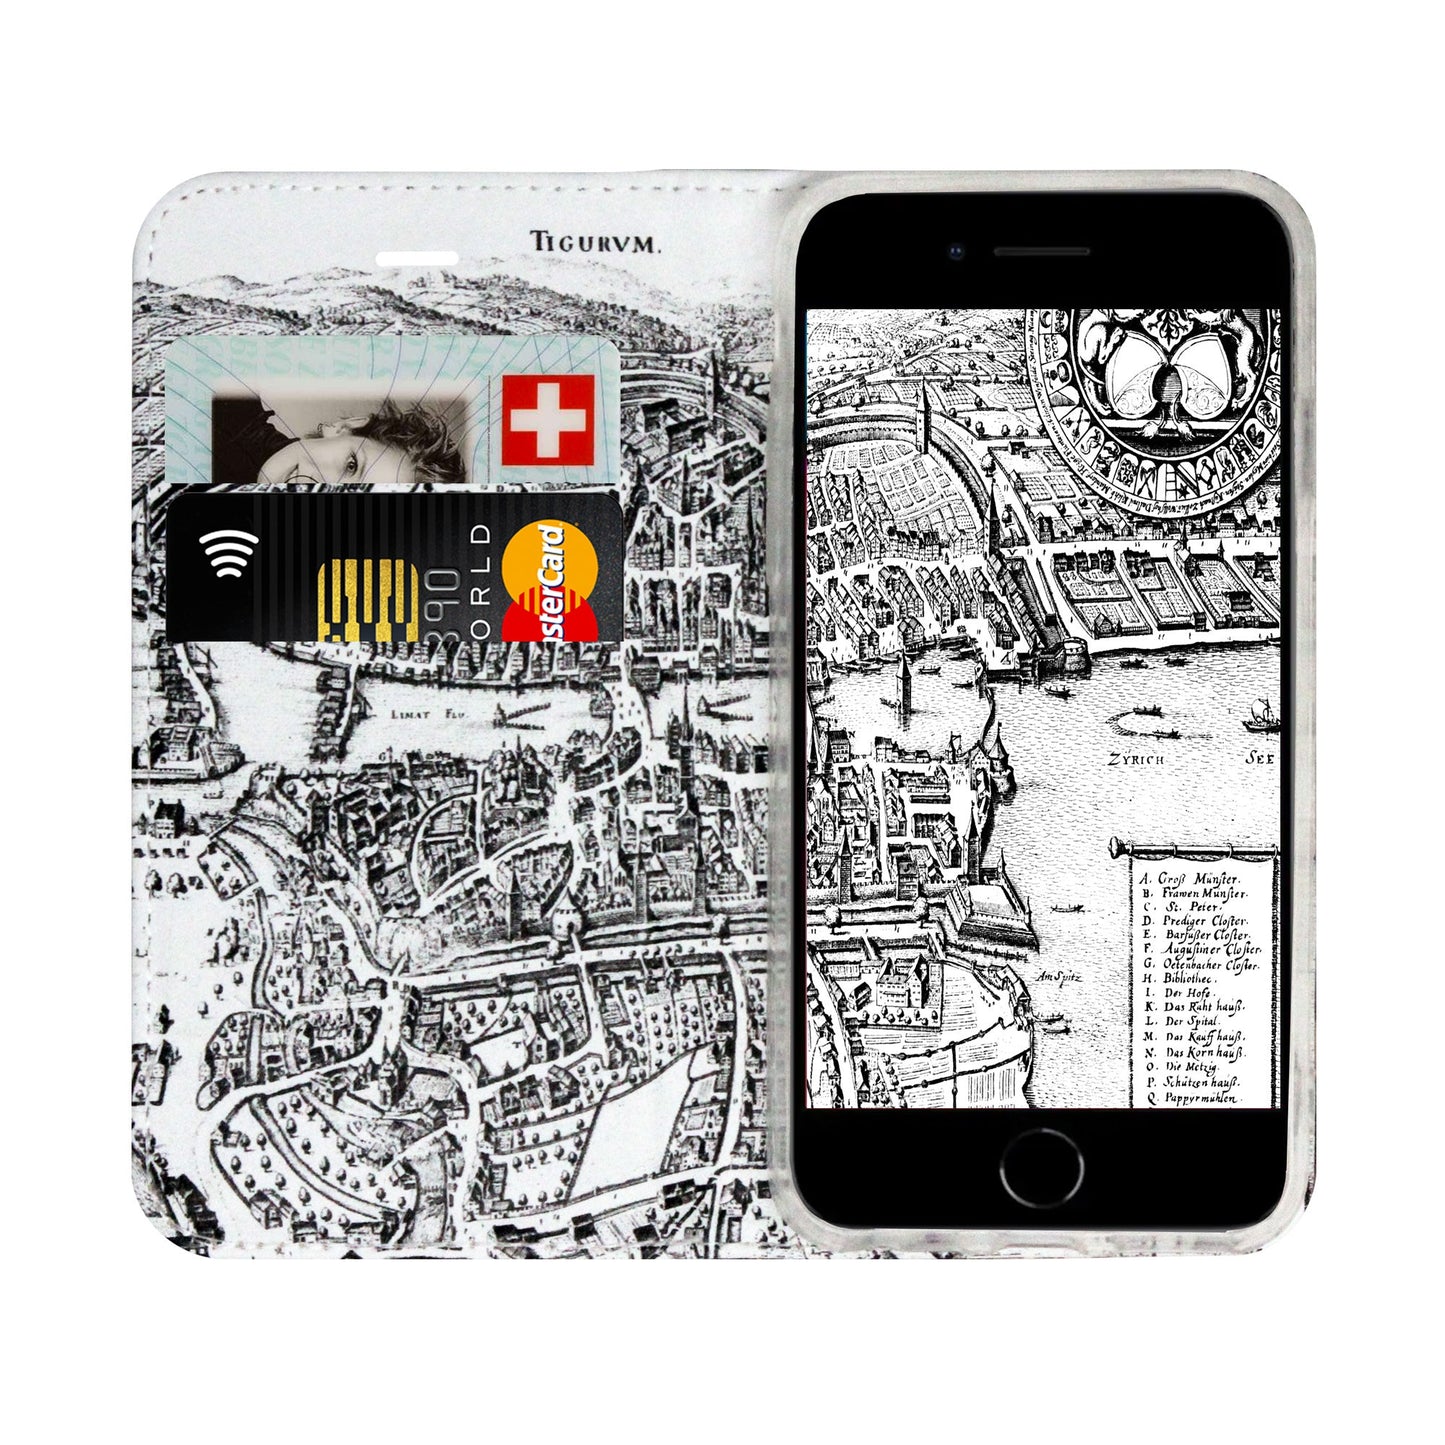 Zürich Merian Panorama Case für iPhone 6/6S/7/8 Plus